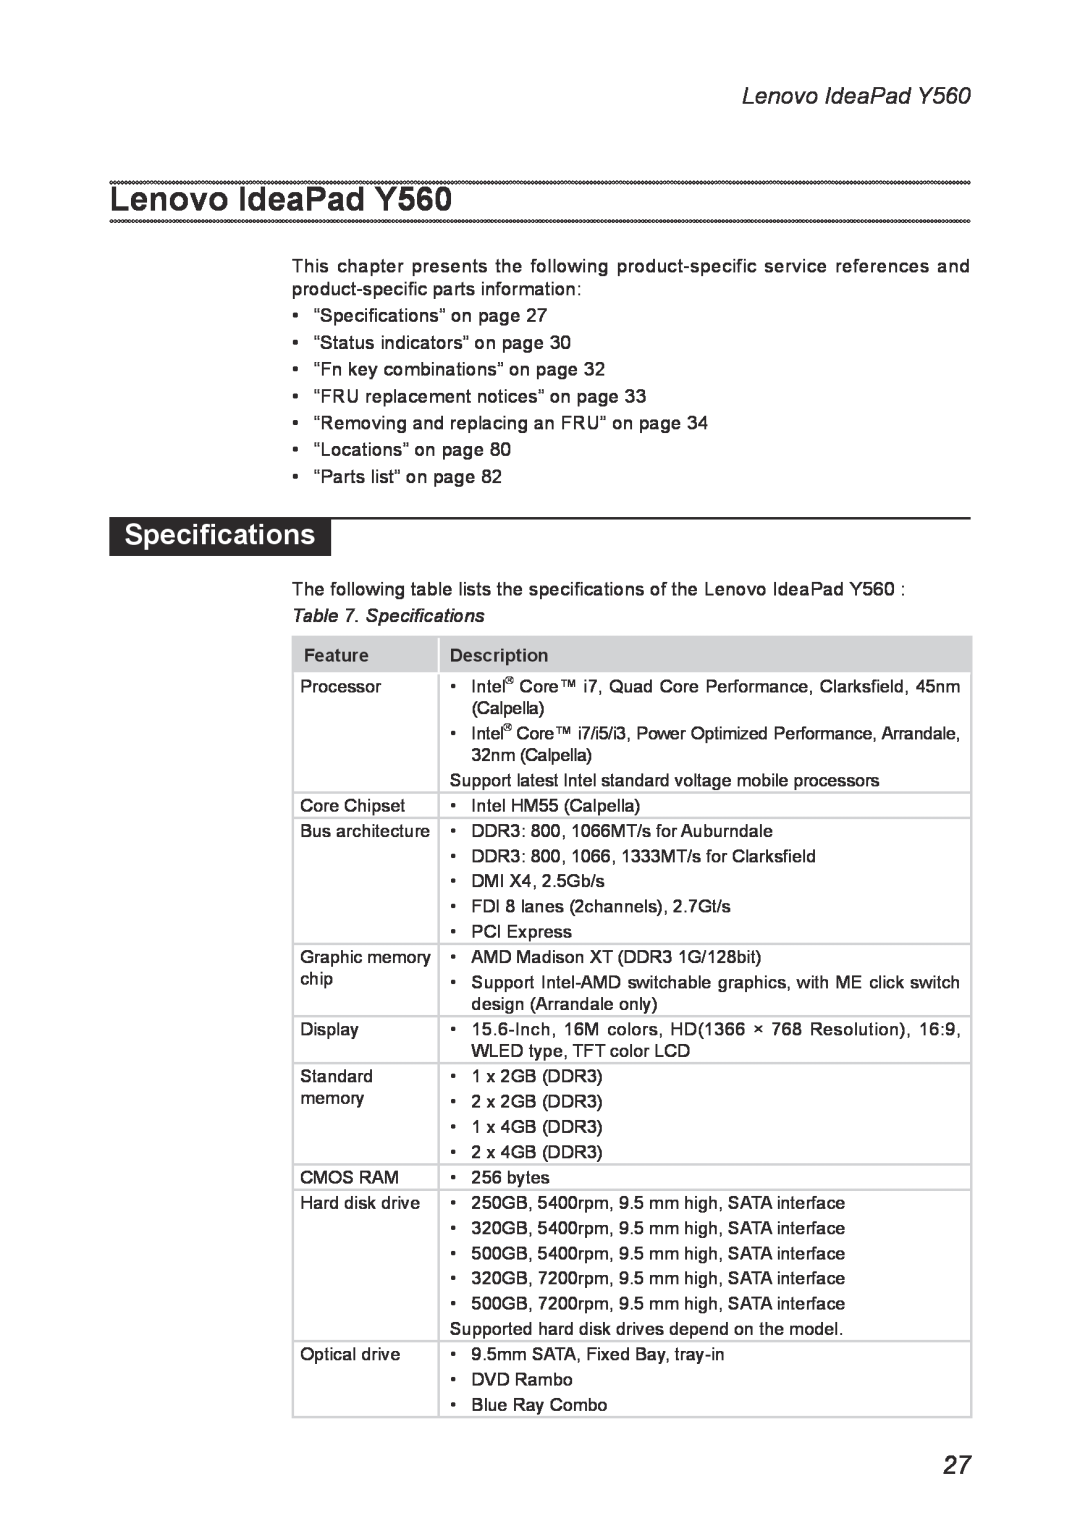 Lenovo manual Lenovo IdeaPad Y560, Specifications, Feature, Description 